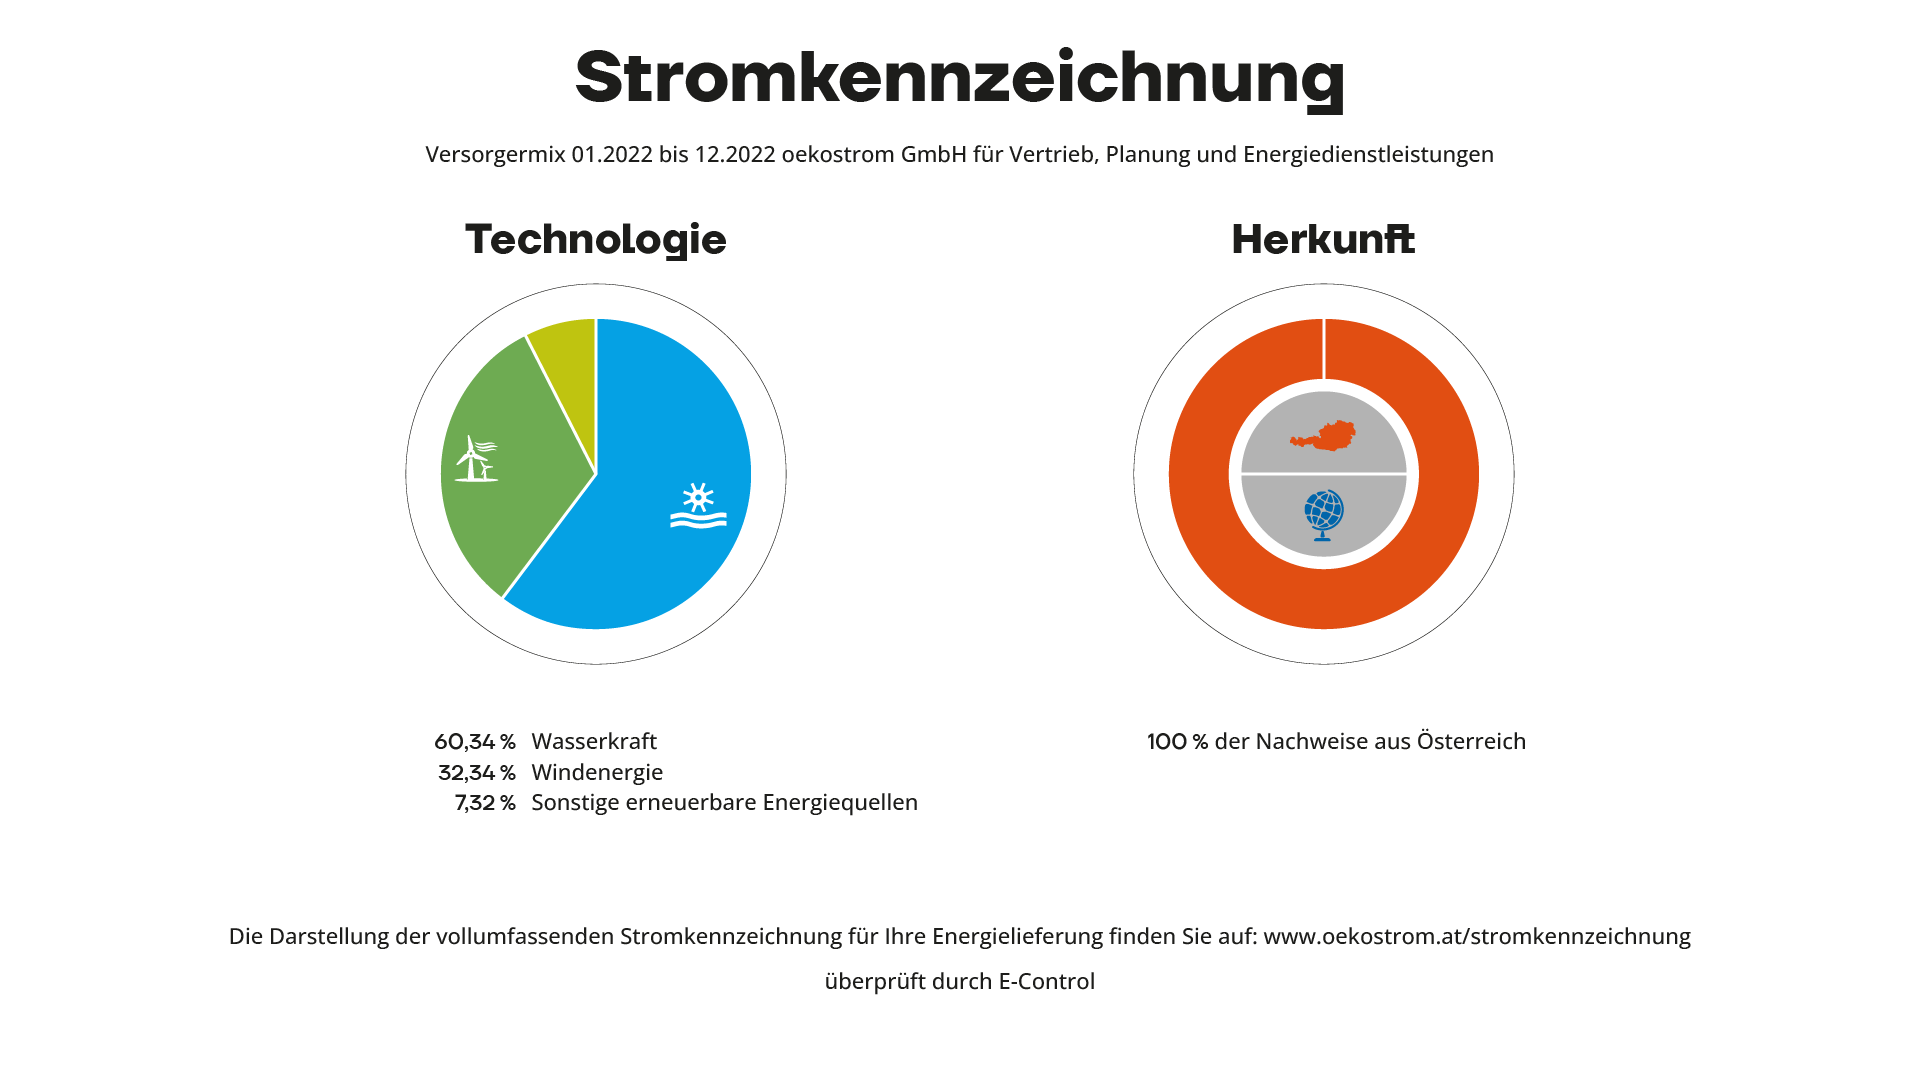 Primäre Stromkennzeichnung der oekostrom AG Versorgermix 2022